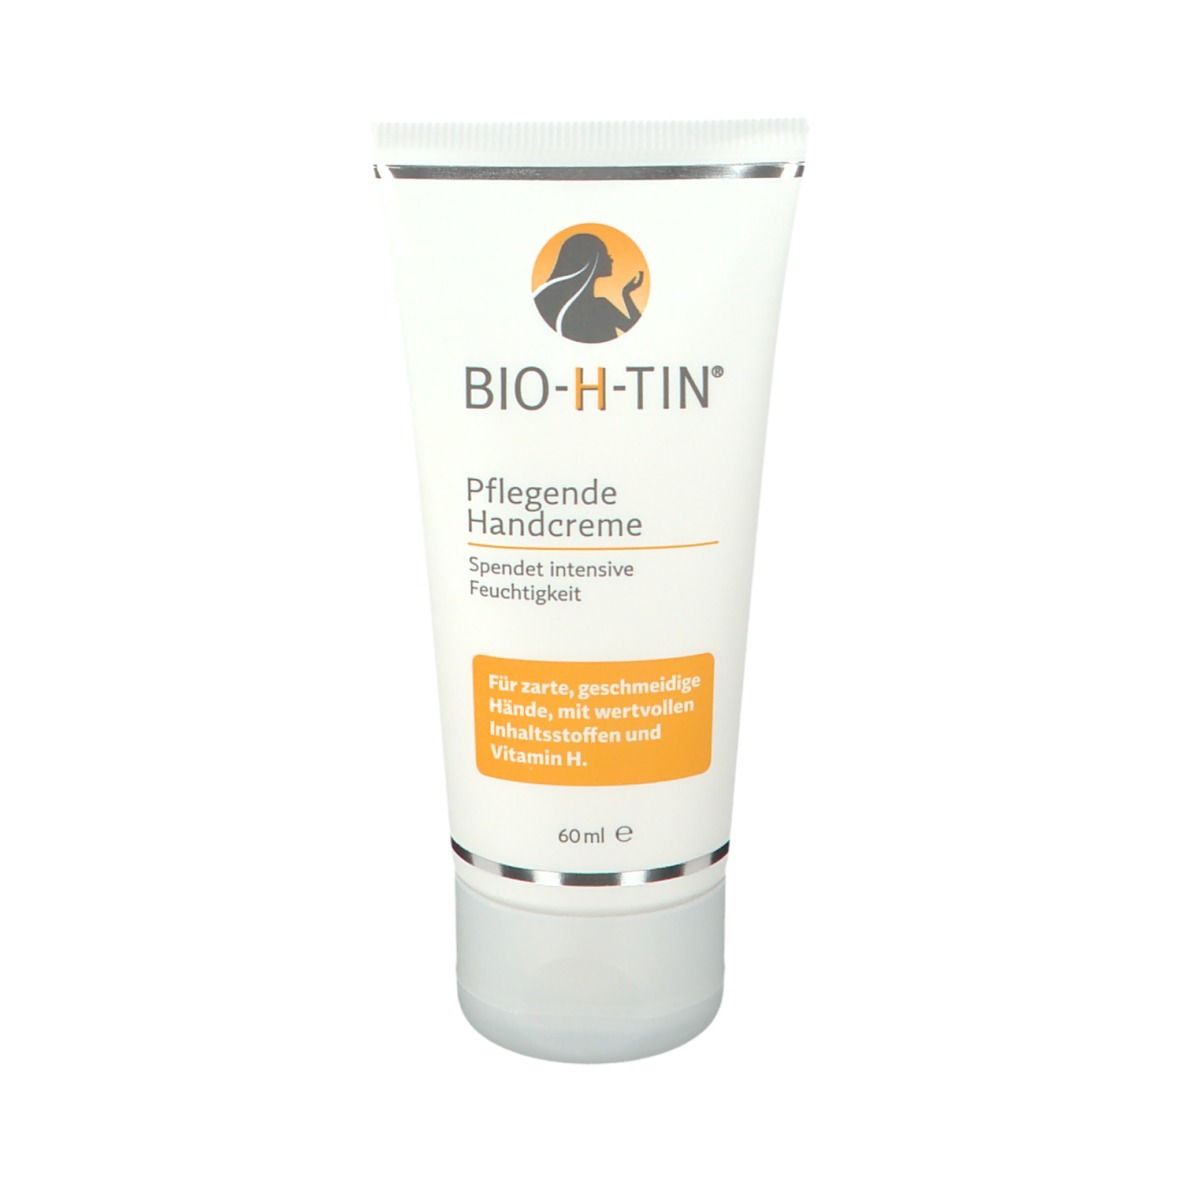 BIO-H-TIN® Handcreme mit Biotin